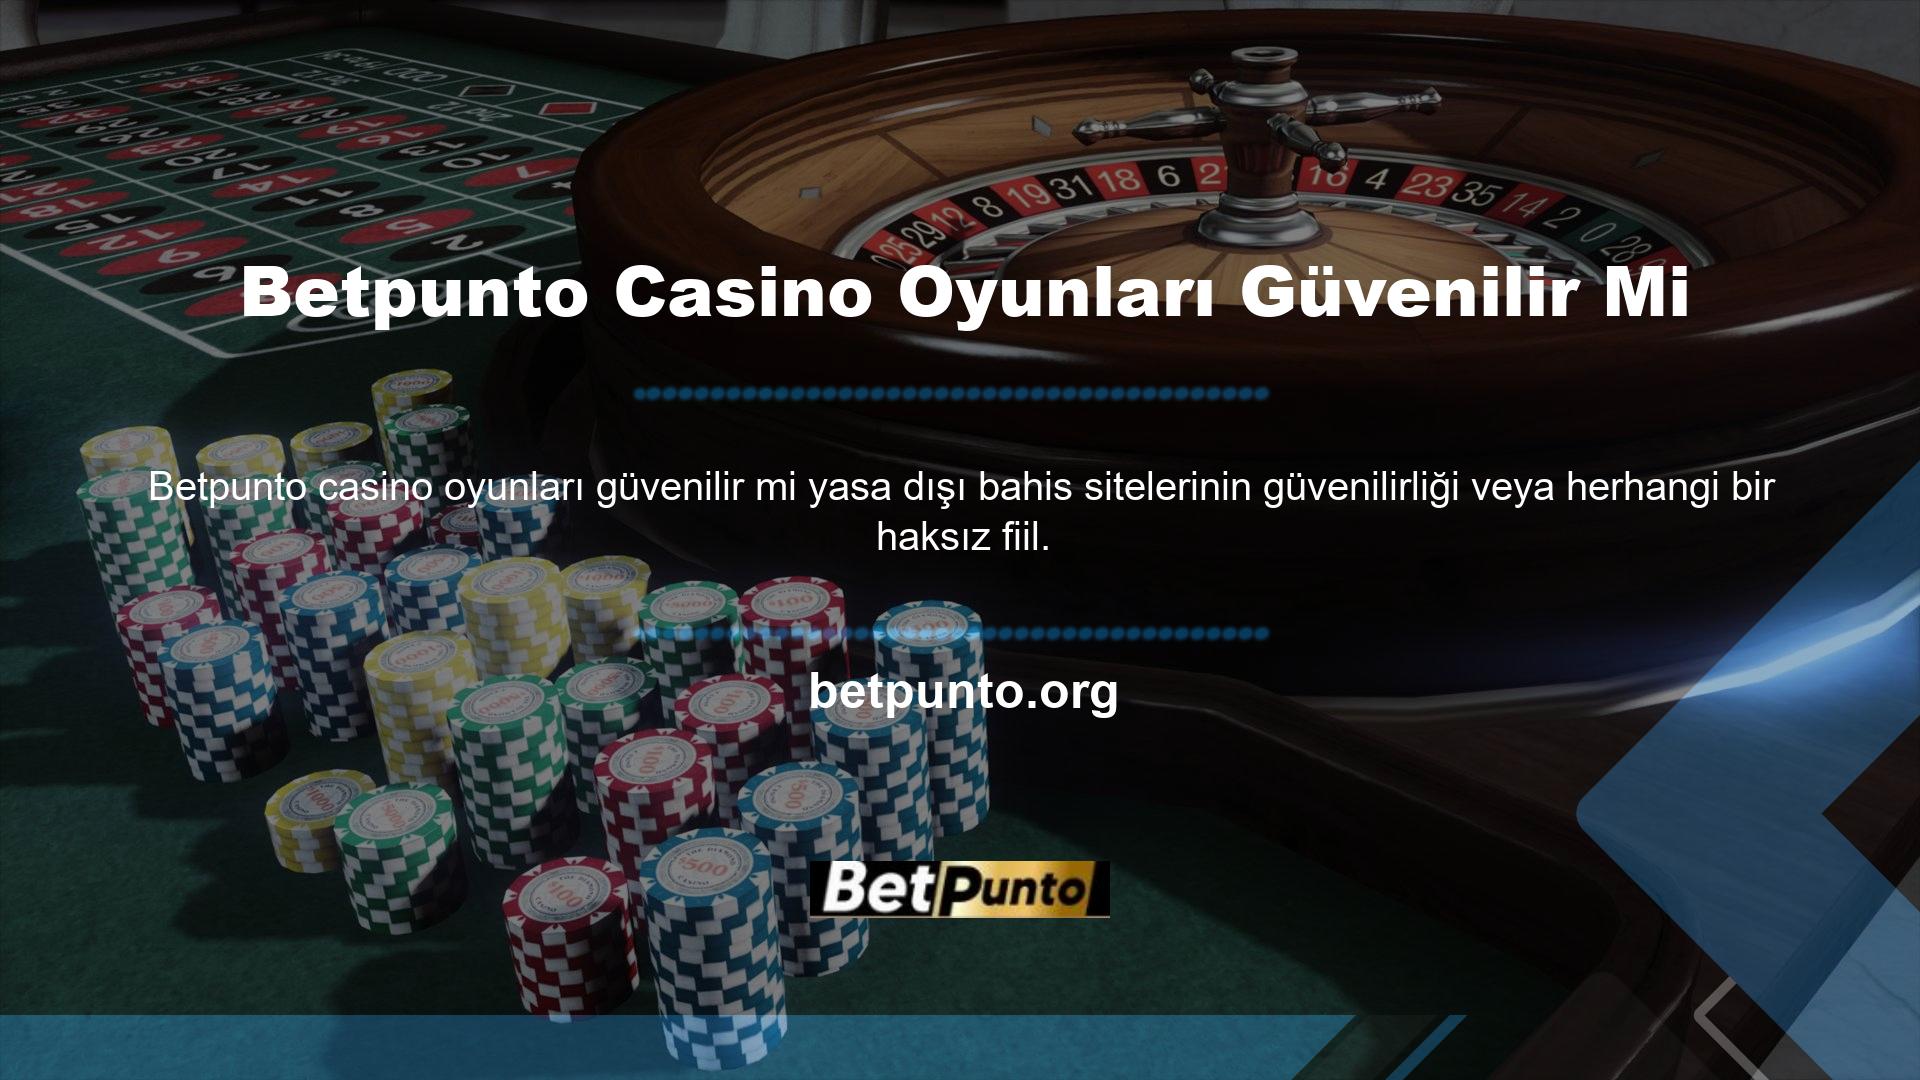 Betpunto Poker güvenilir midir bu soru da bu bağlamda değerlendirilebilir